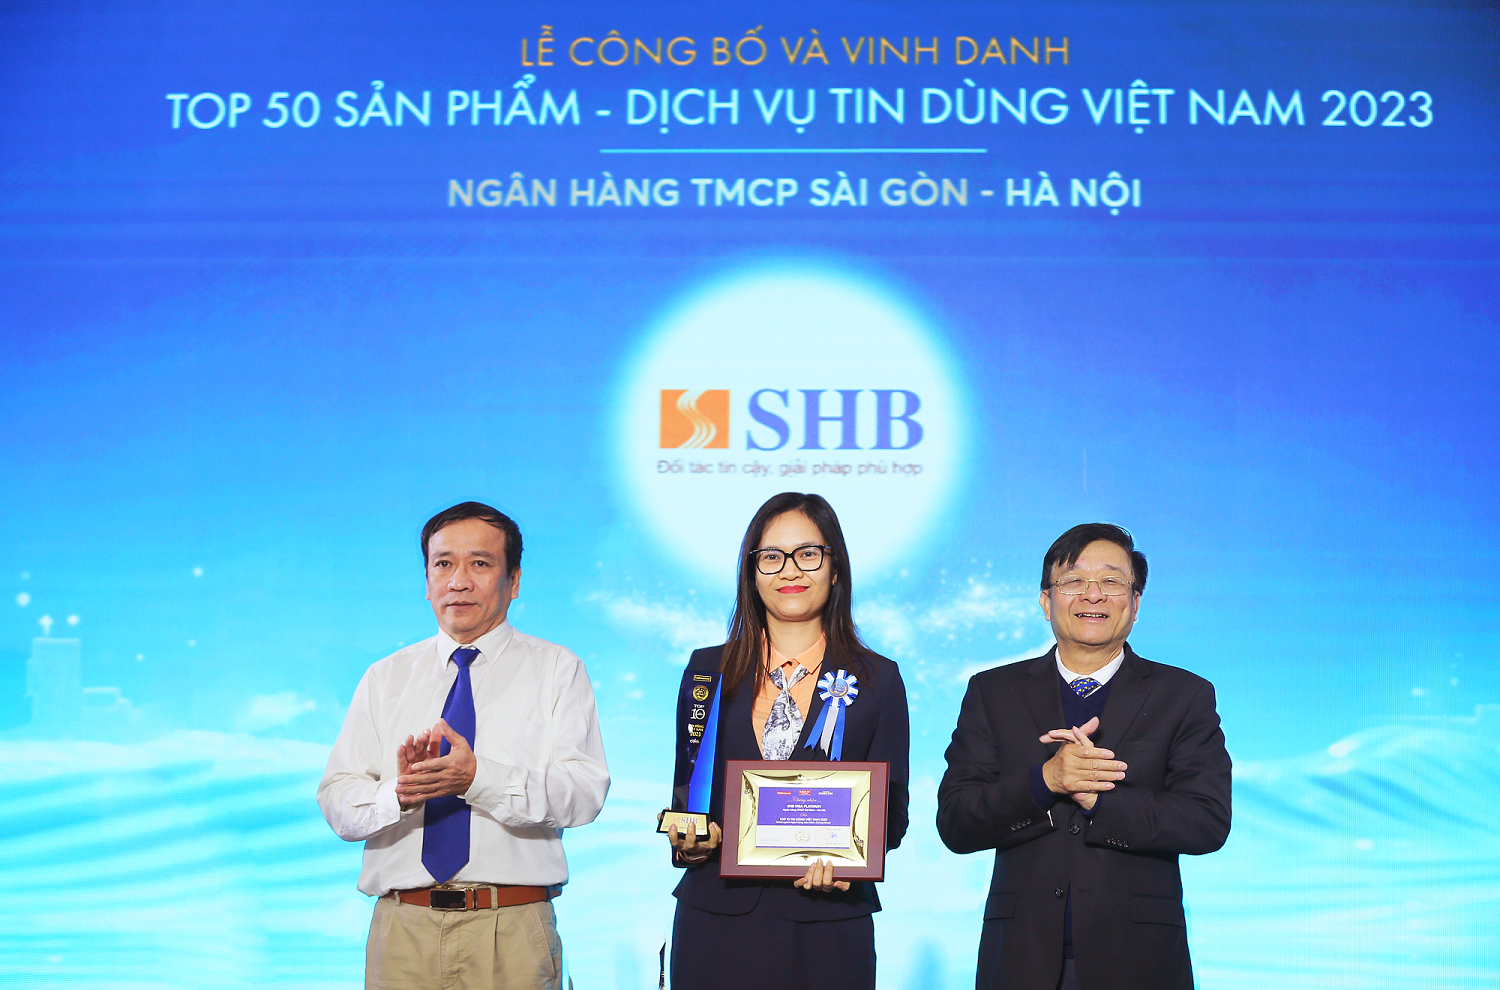 Thẻ tín dụng SHB VISA Platinum được vinh danh Top 50 sản phẩm dịch vụ tin dùng Việt Nam 2023 - Ảnh 1.